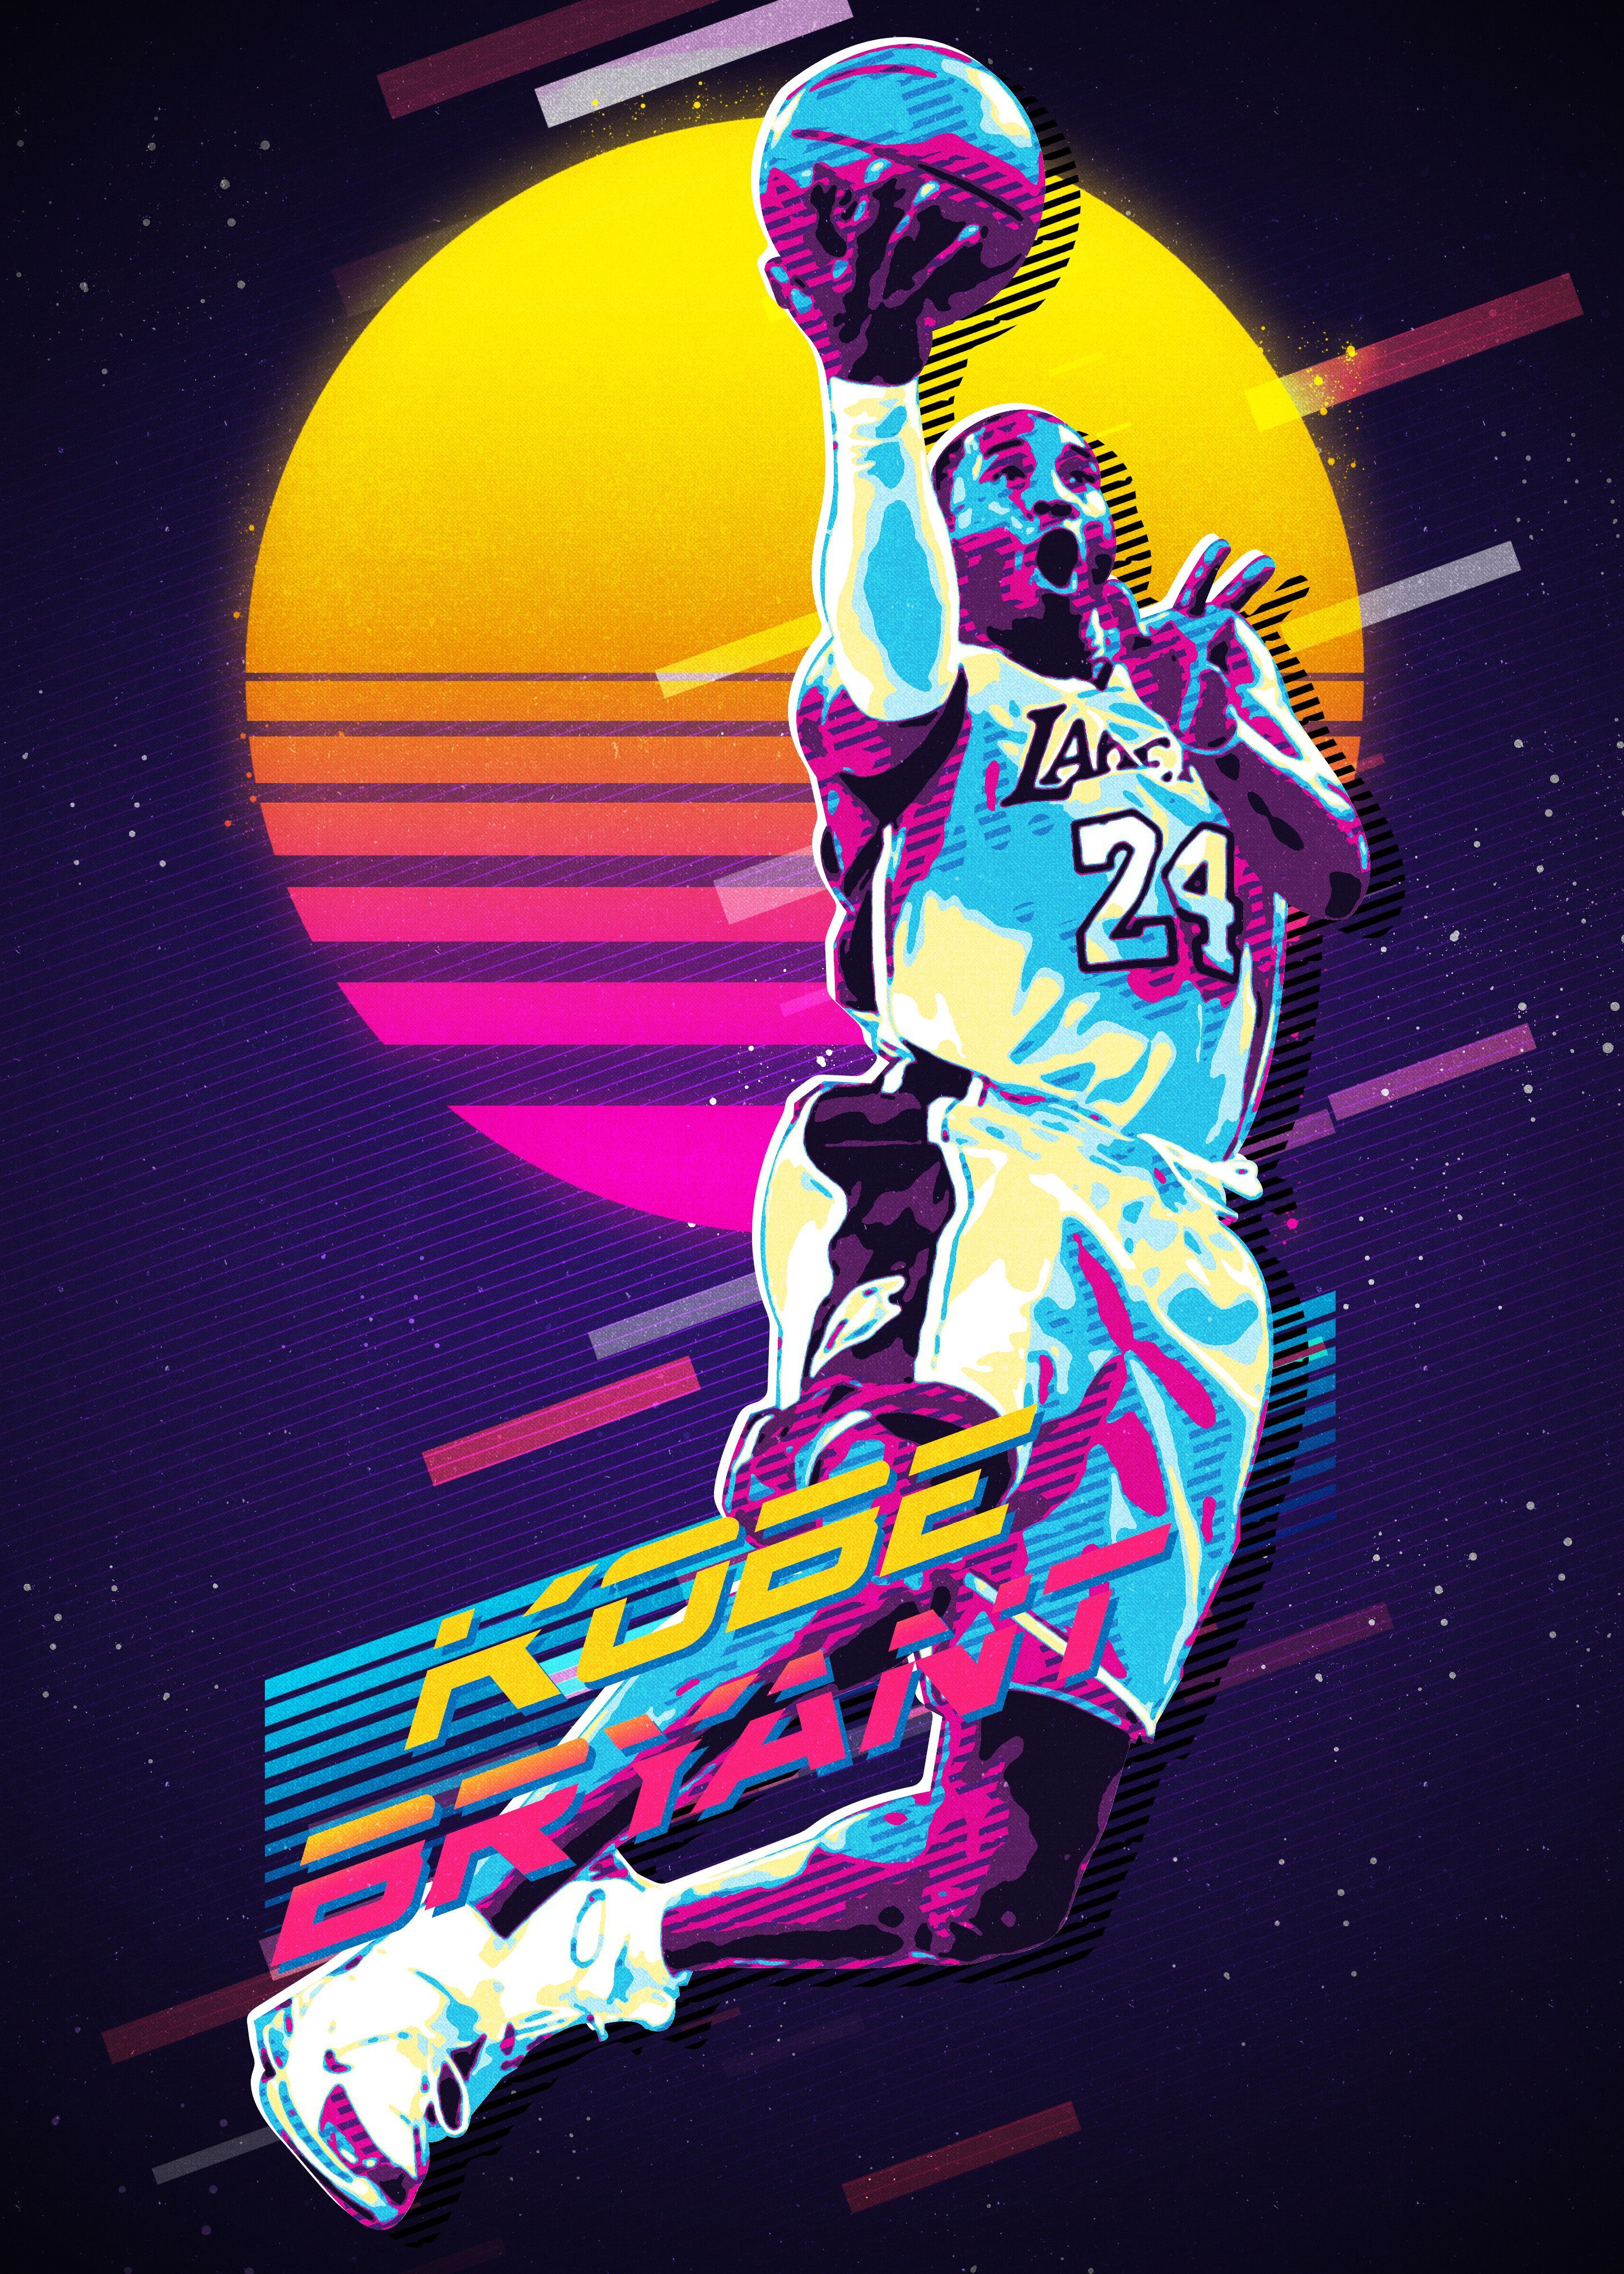 Bạn là fan của Kobe Bryant? Hãy tải ngay những hình nền Kobe đẹp nhất để tỏ lòng tôn kính và ngưỡng mộ ngôi sao bóng rổ vĩ đại này.